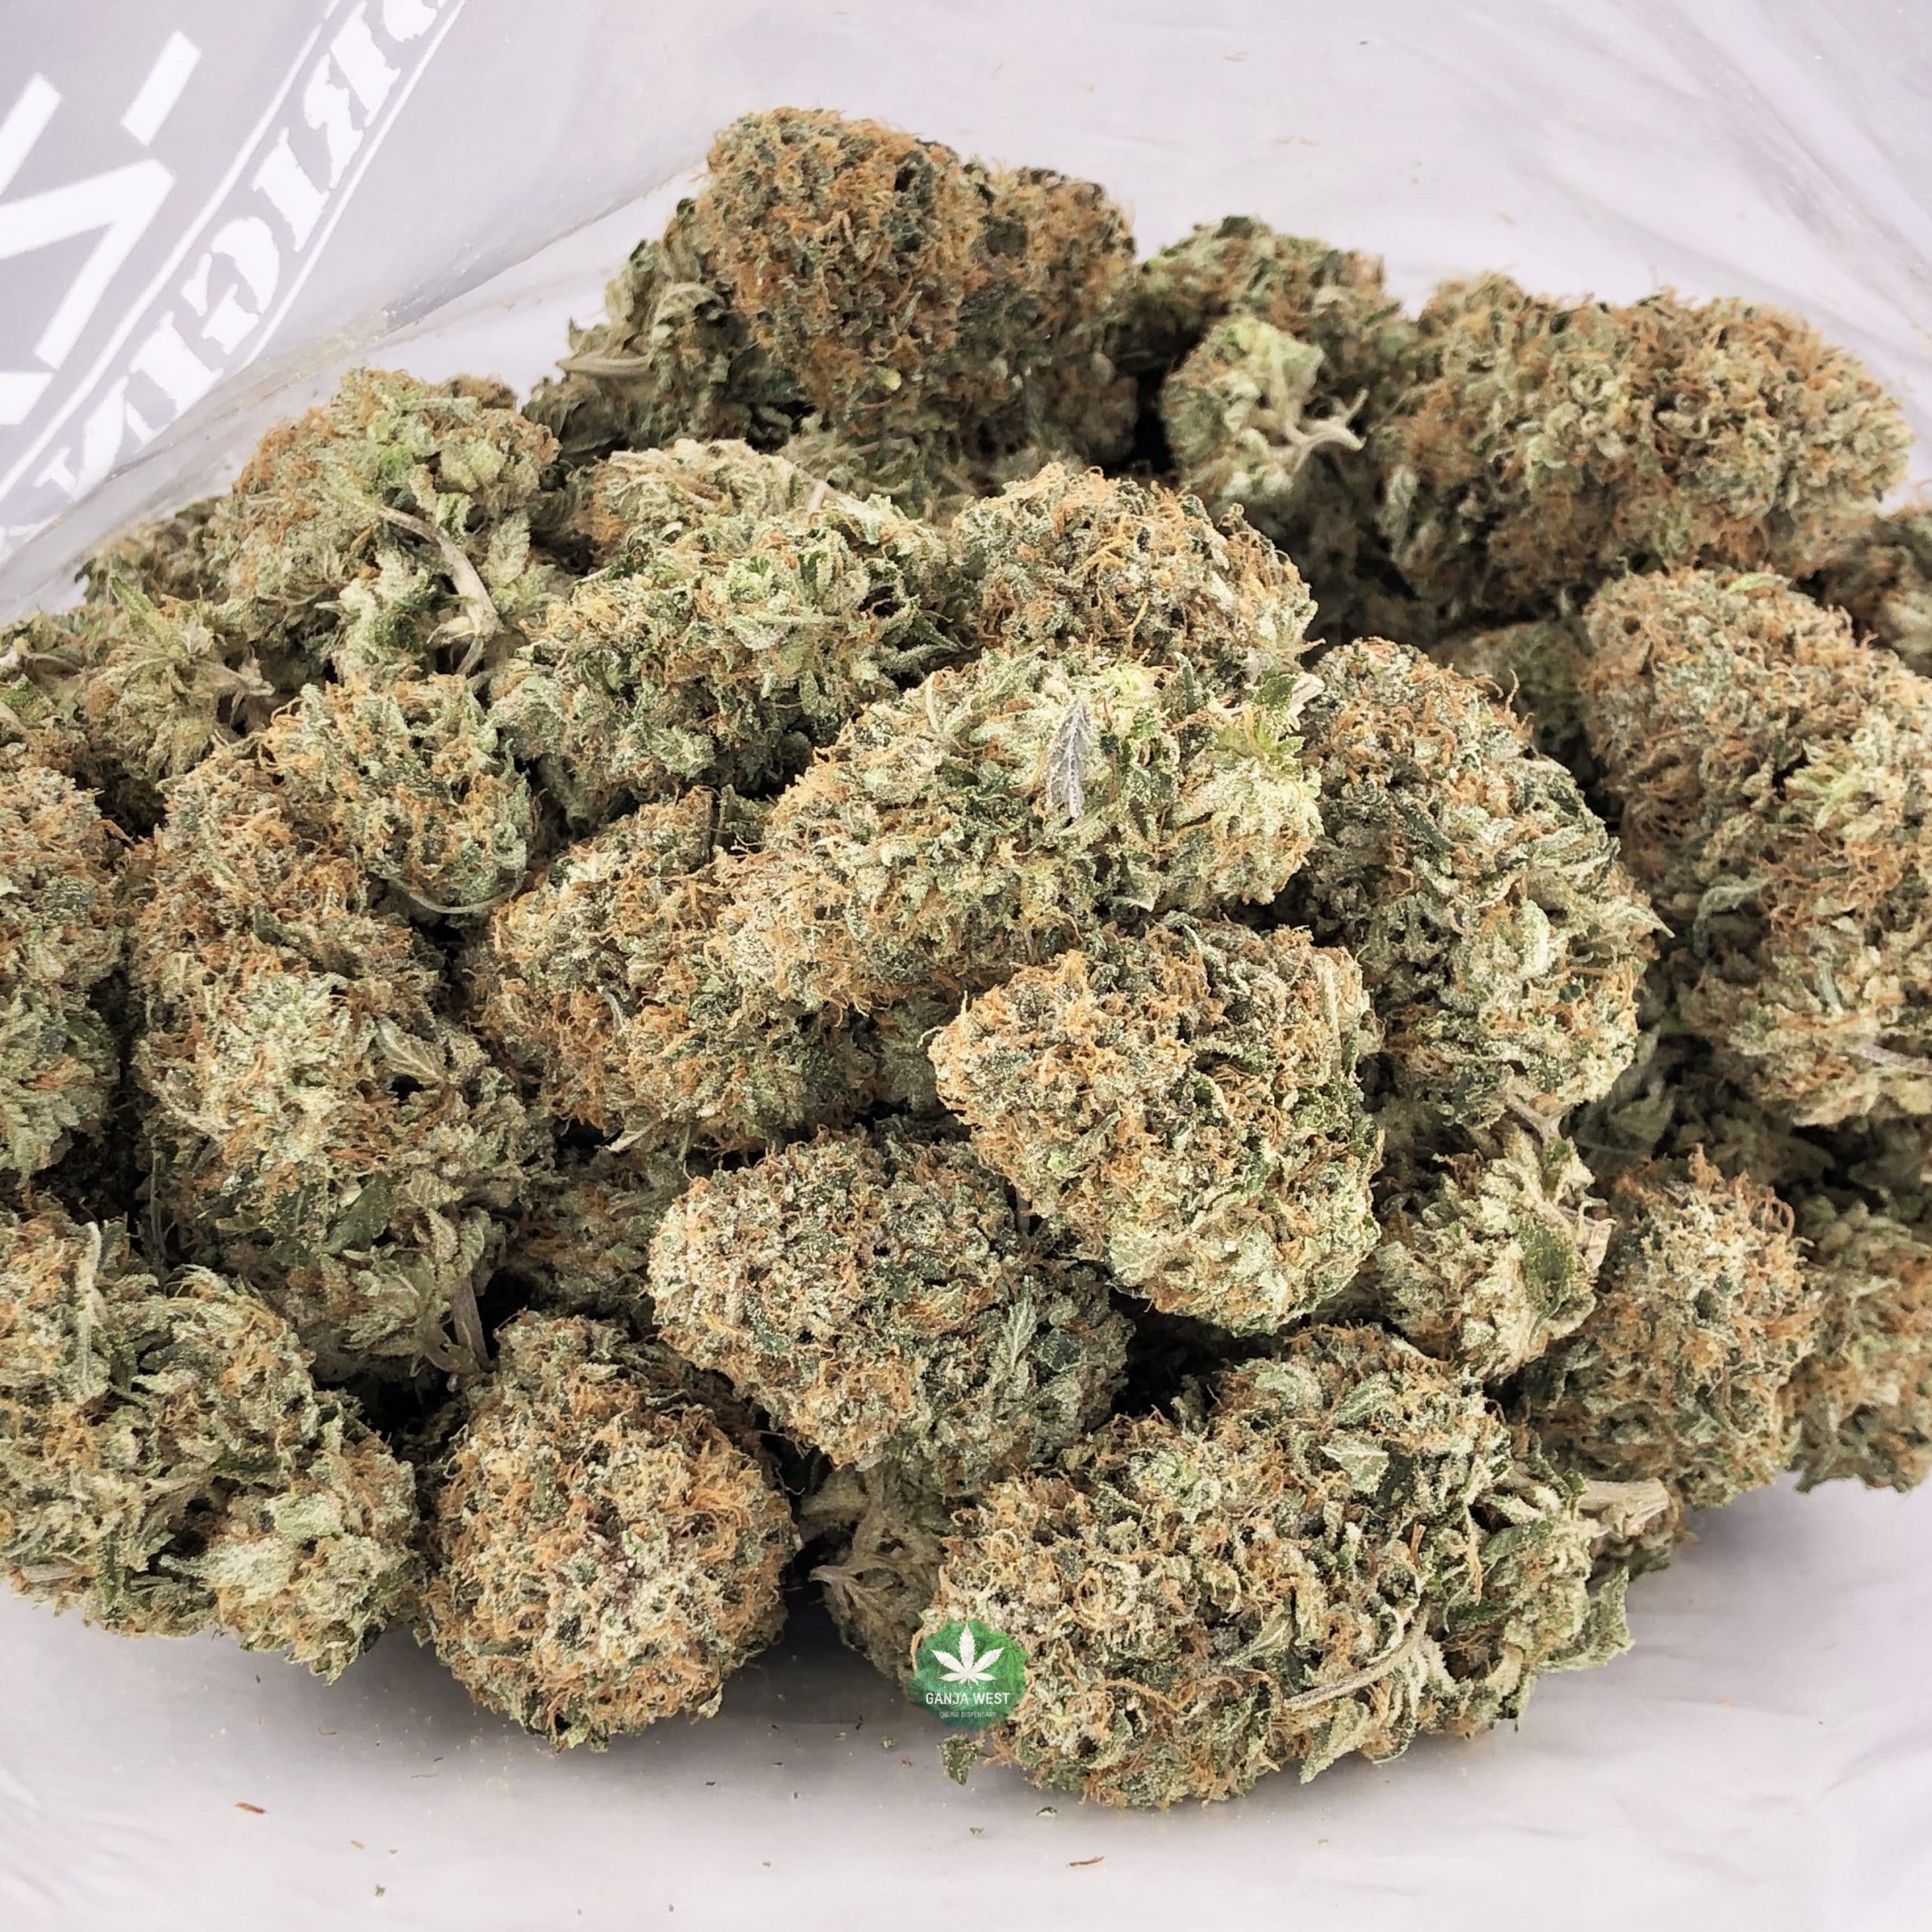 buy-strain-cannabis-online-dispensary-ganja-west-aaaa-galactic-deathstar-wholesale-scaled-2.jpg